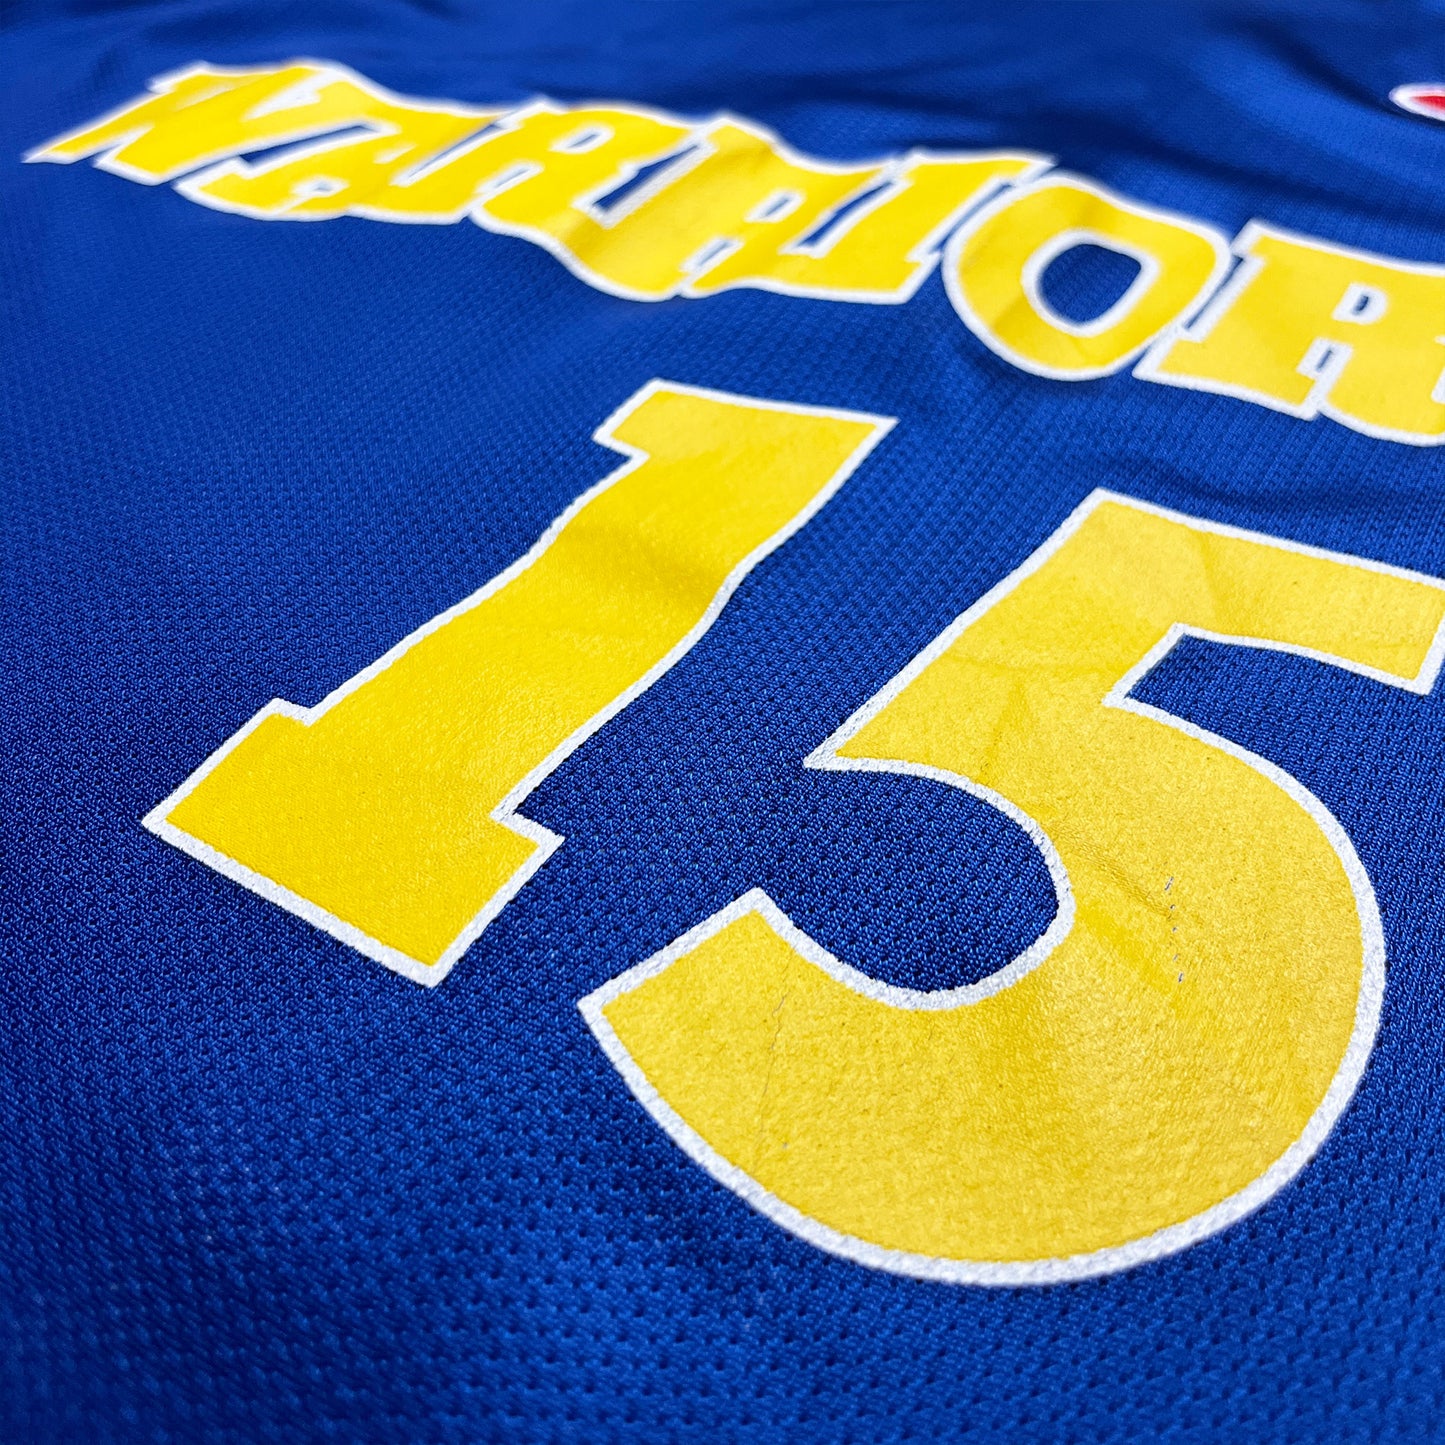 Golden State Warriors - Latrell Sprewell - Größe M / US40 - Champion - NBA Trikot